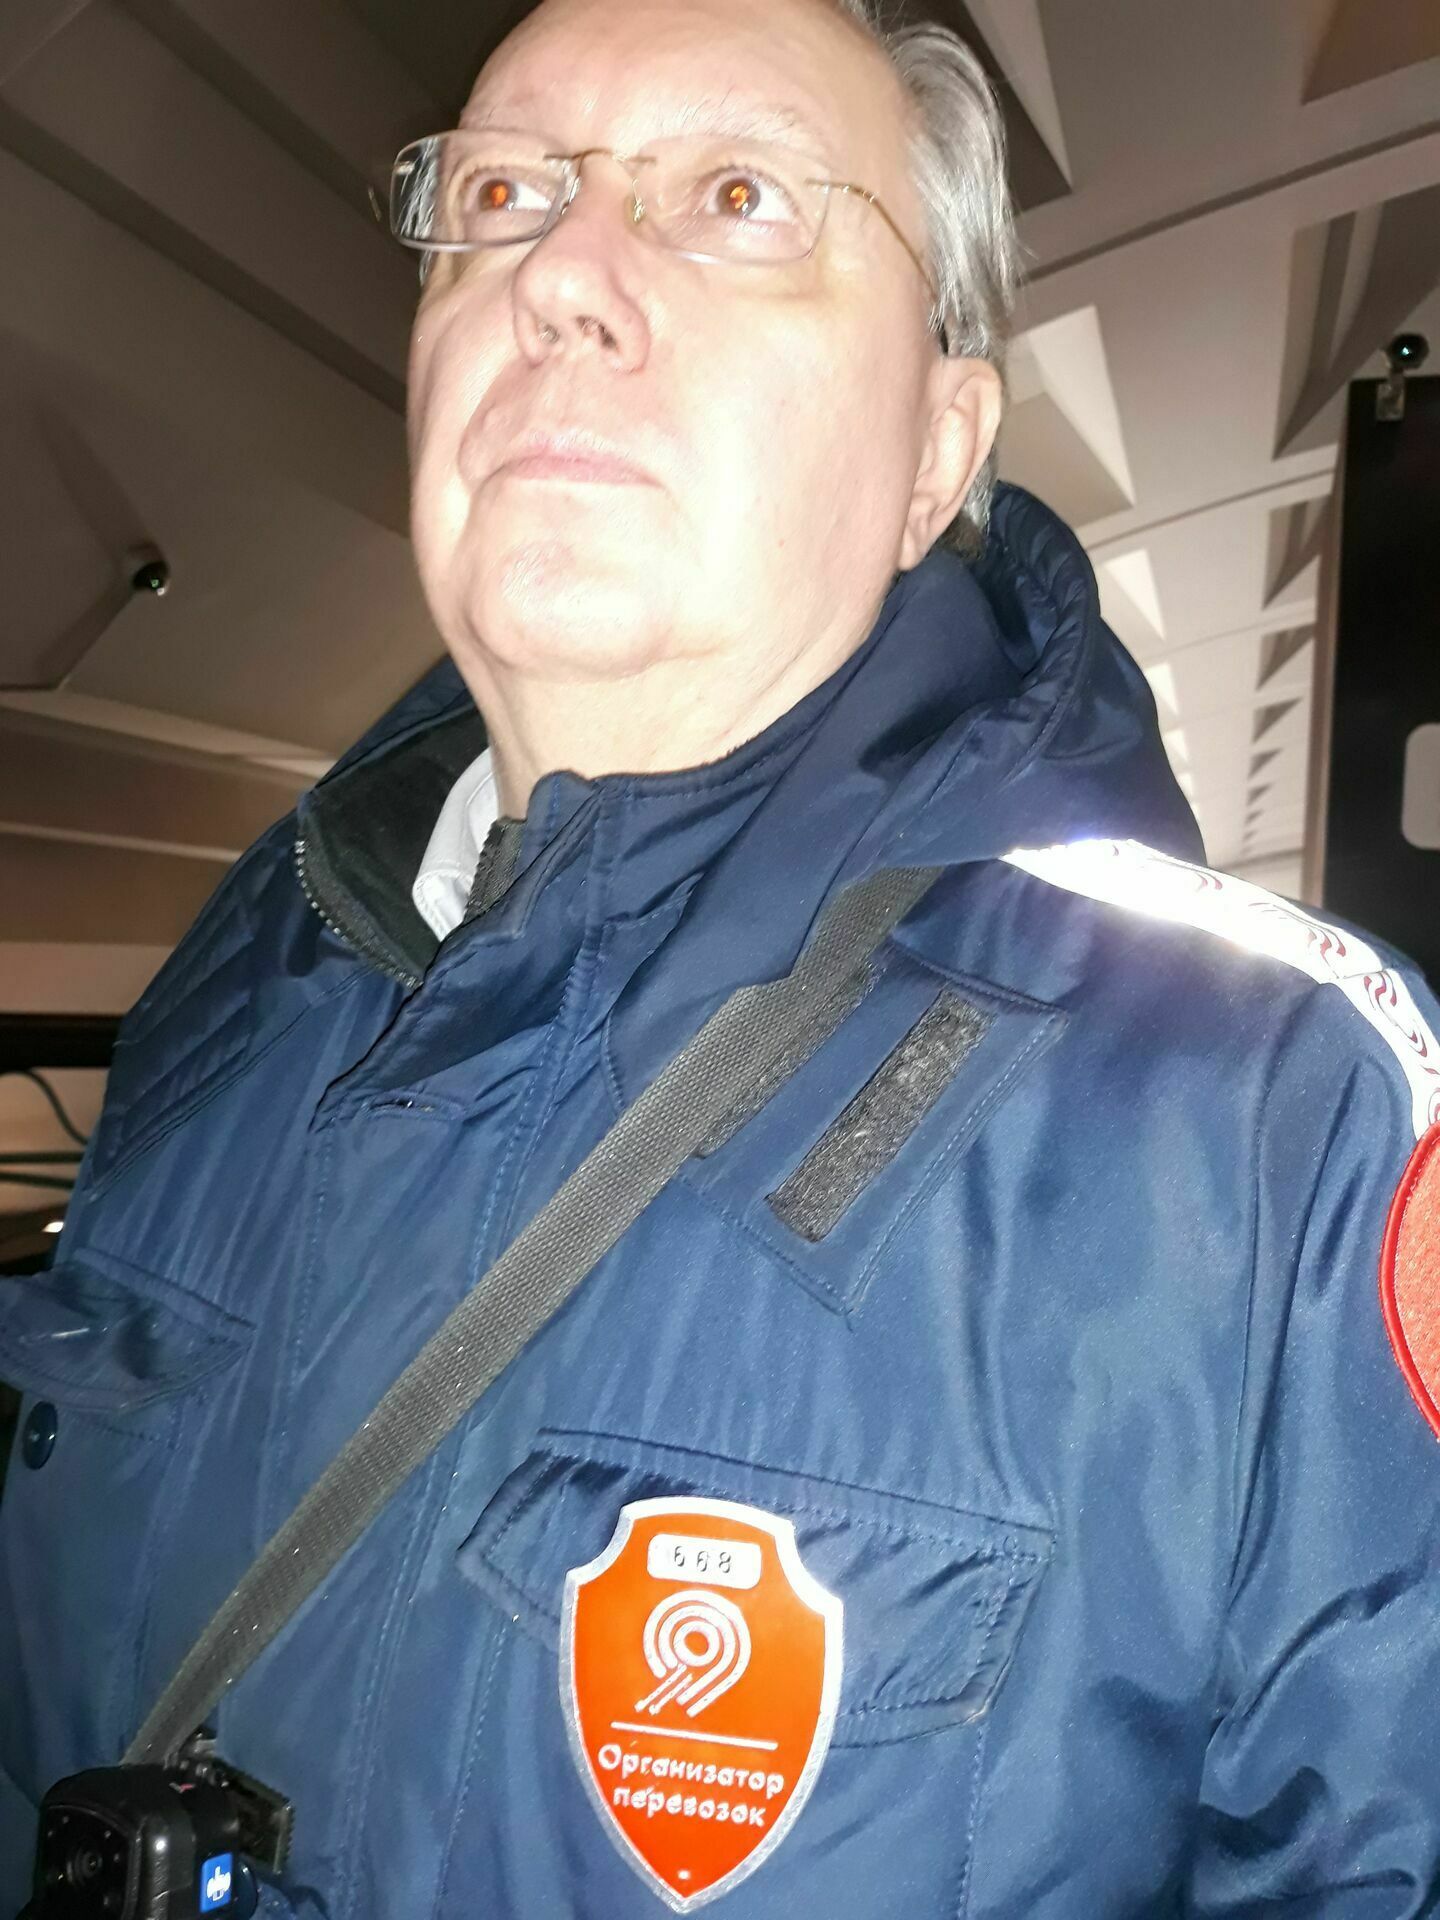 Этот контролер на станции метро "Славянский бульвар" признался, что не имеет права задерживать людей на самокатах: " Я же документы у них не проверю - права не имею".